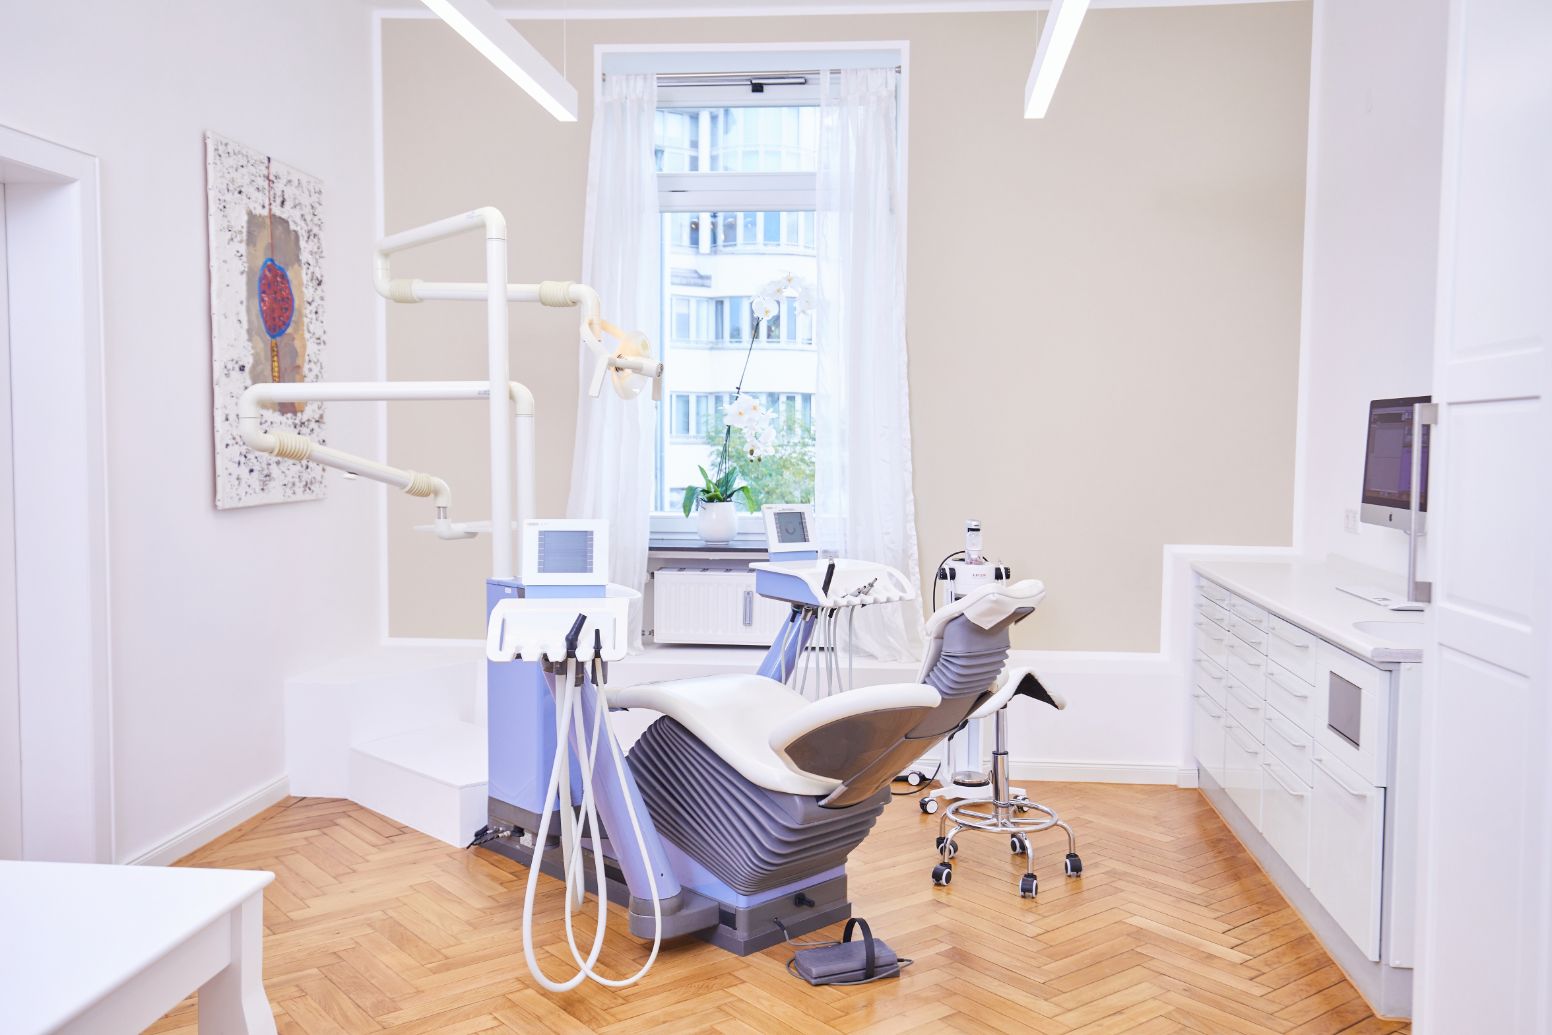 Zahnärztin München nahe Gärtnerplatz - Praxiseindrücke aus Zahnarztpraxis - Behandlungszimmer